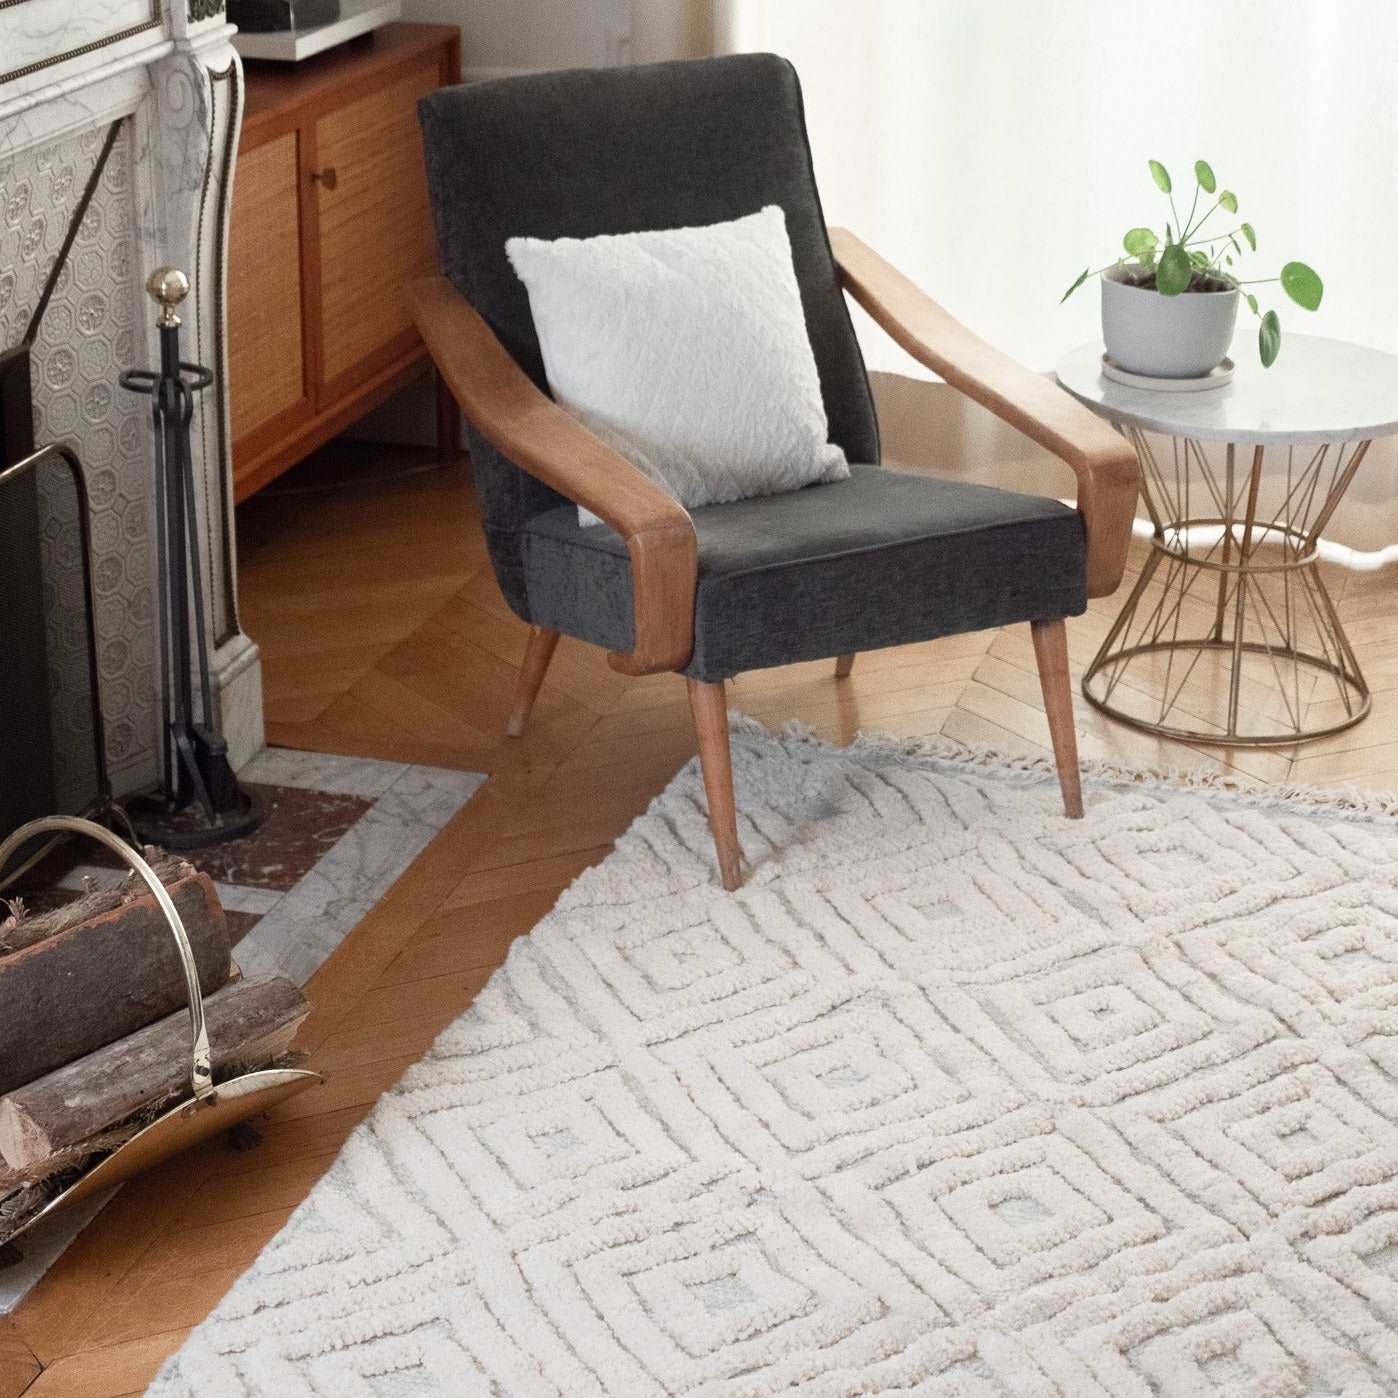 Handloomed wool rug from Tunisia